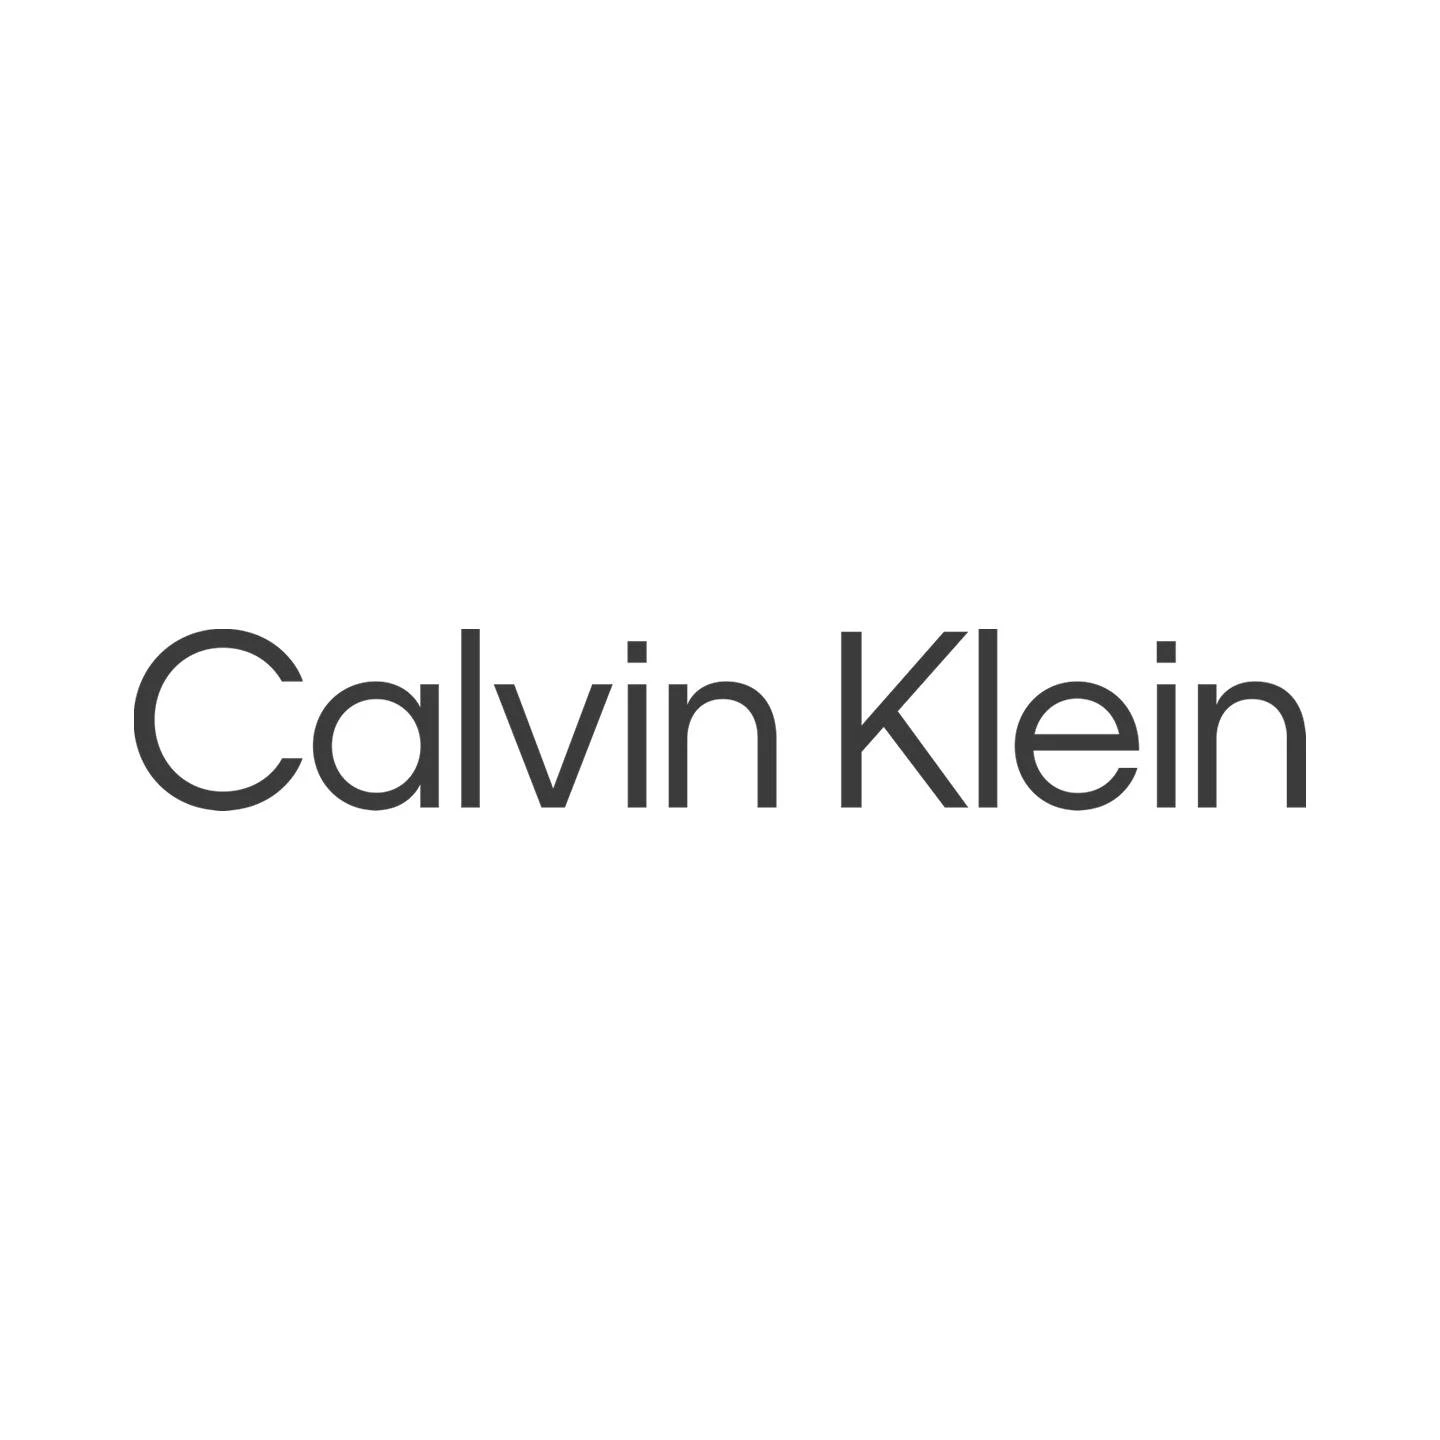 Celvin Klein